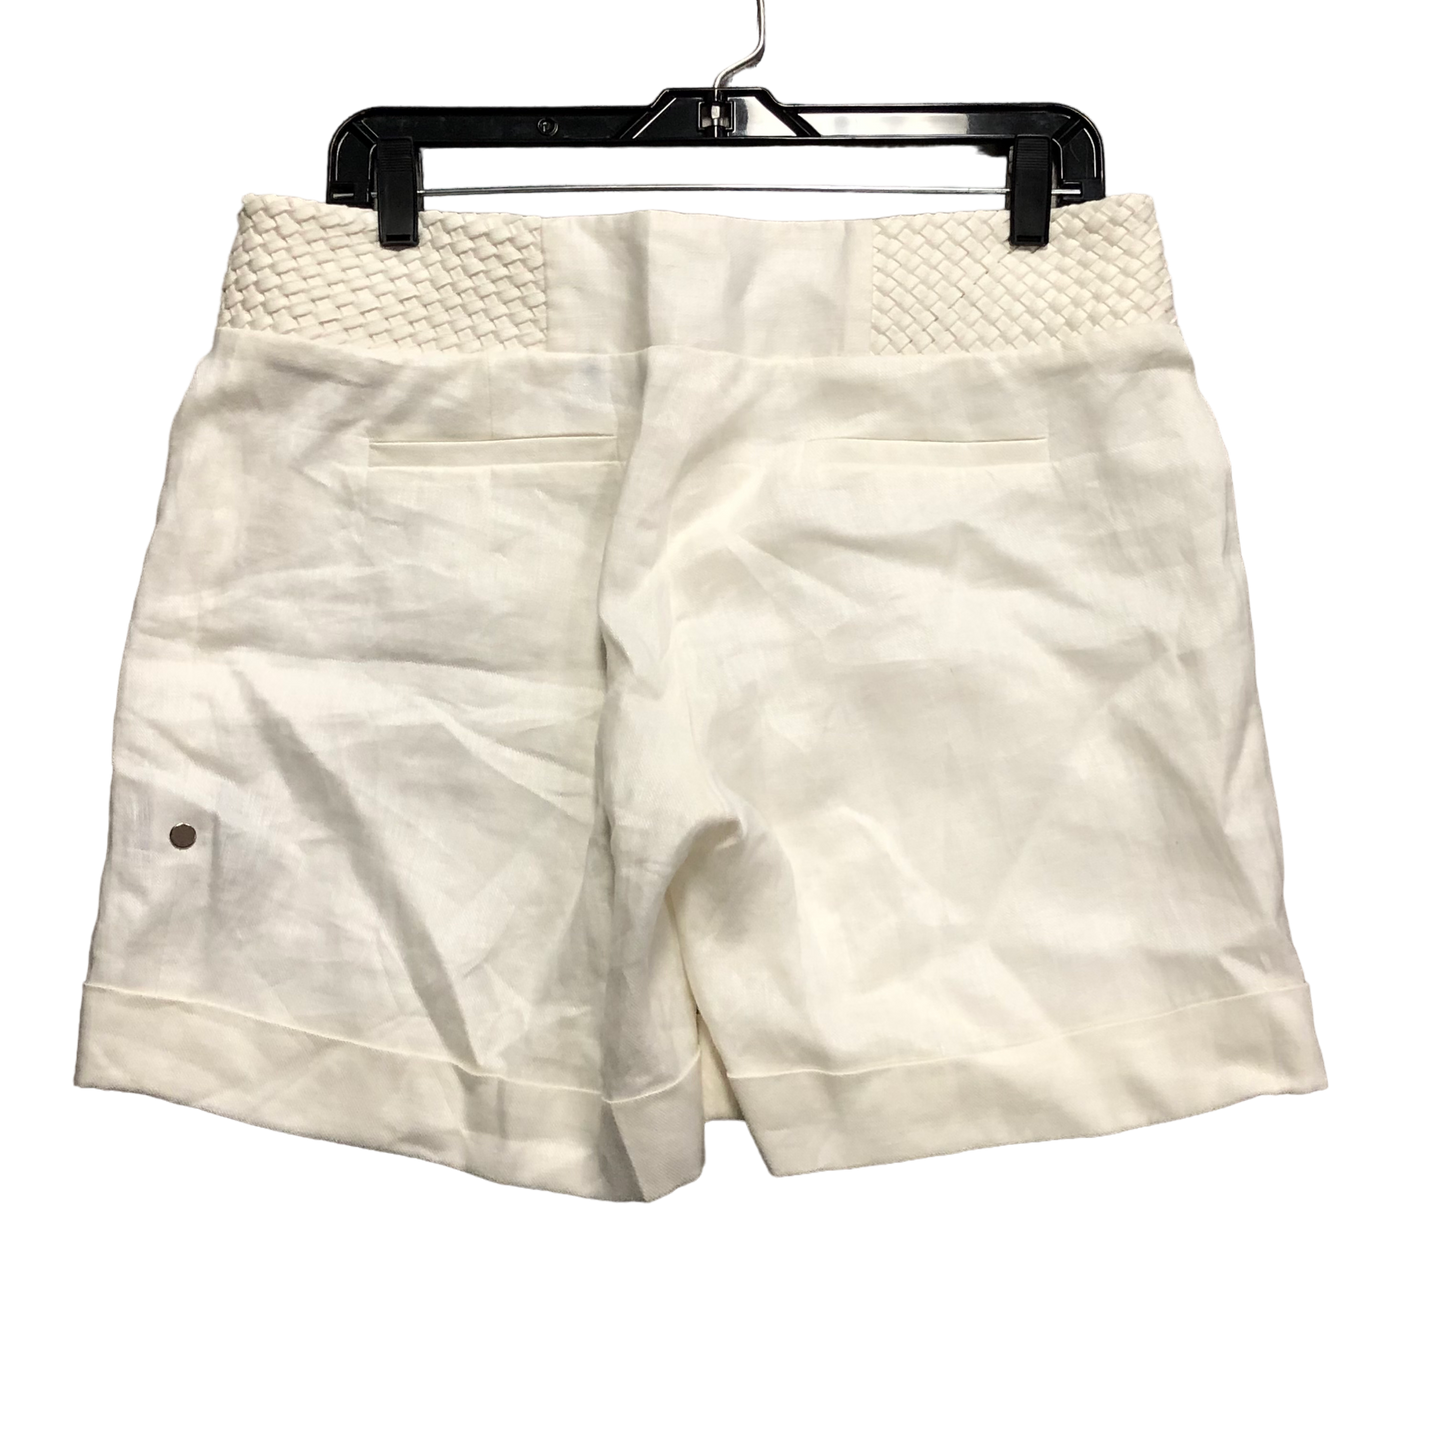 Shorts By Antonio Melani  Size: 8